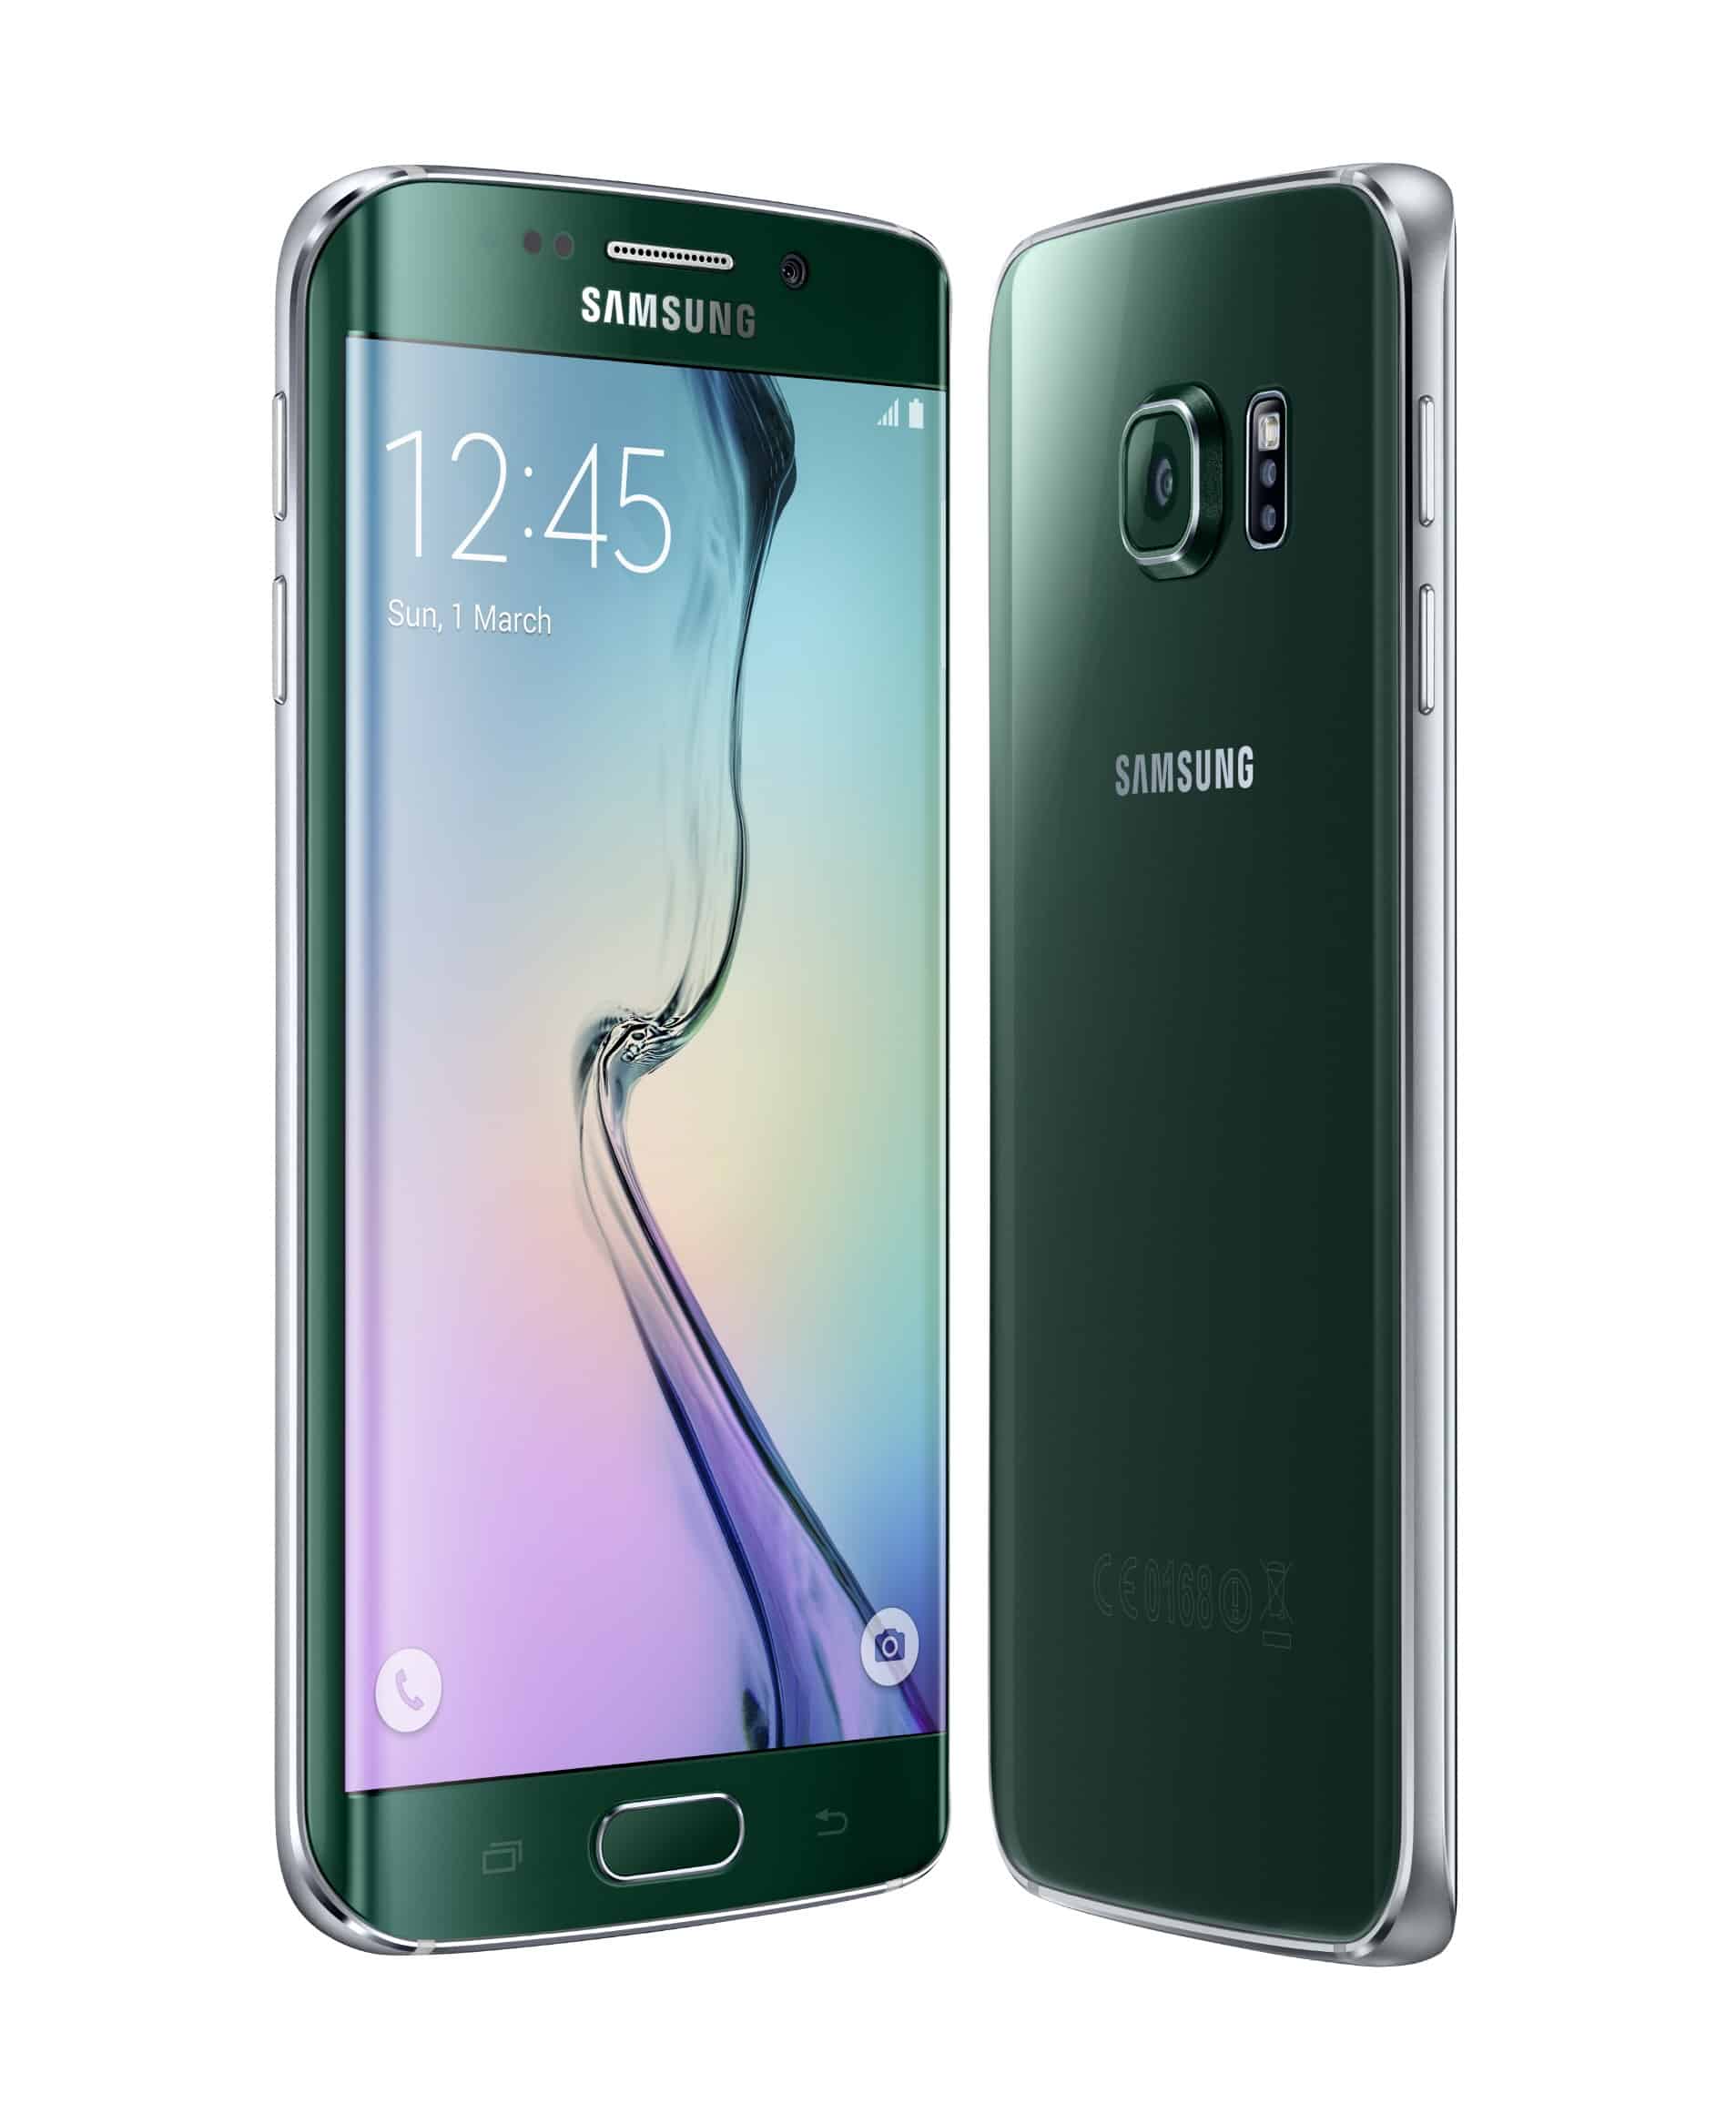 Galaxy S6 e Galaxy S6 edge: mix di tecnologia innovativa, semplicità d'uso e design sofisticato